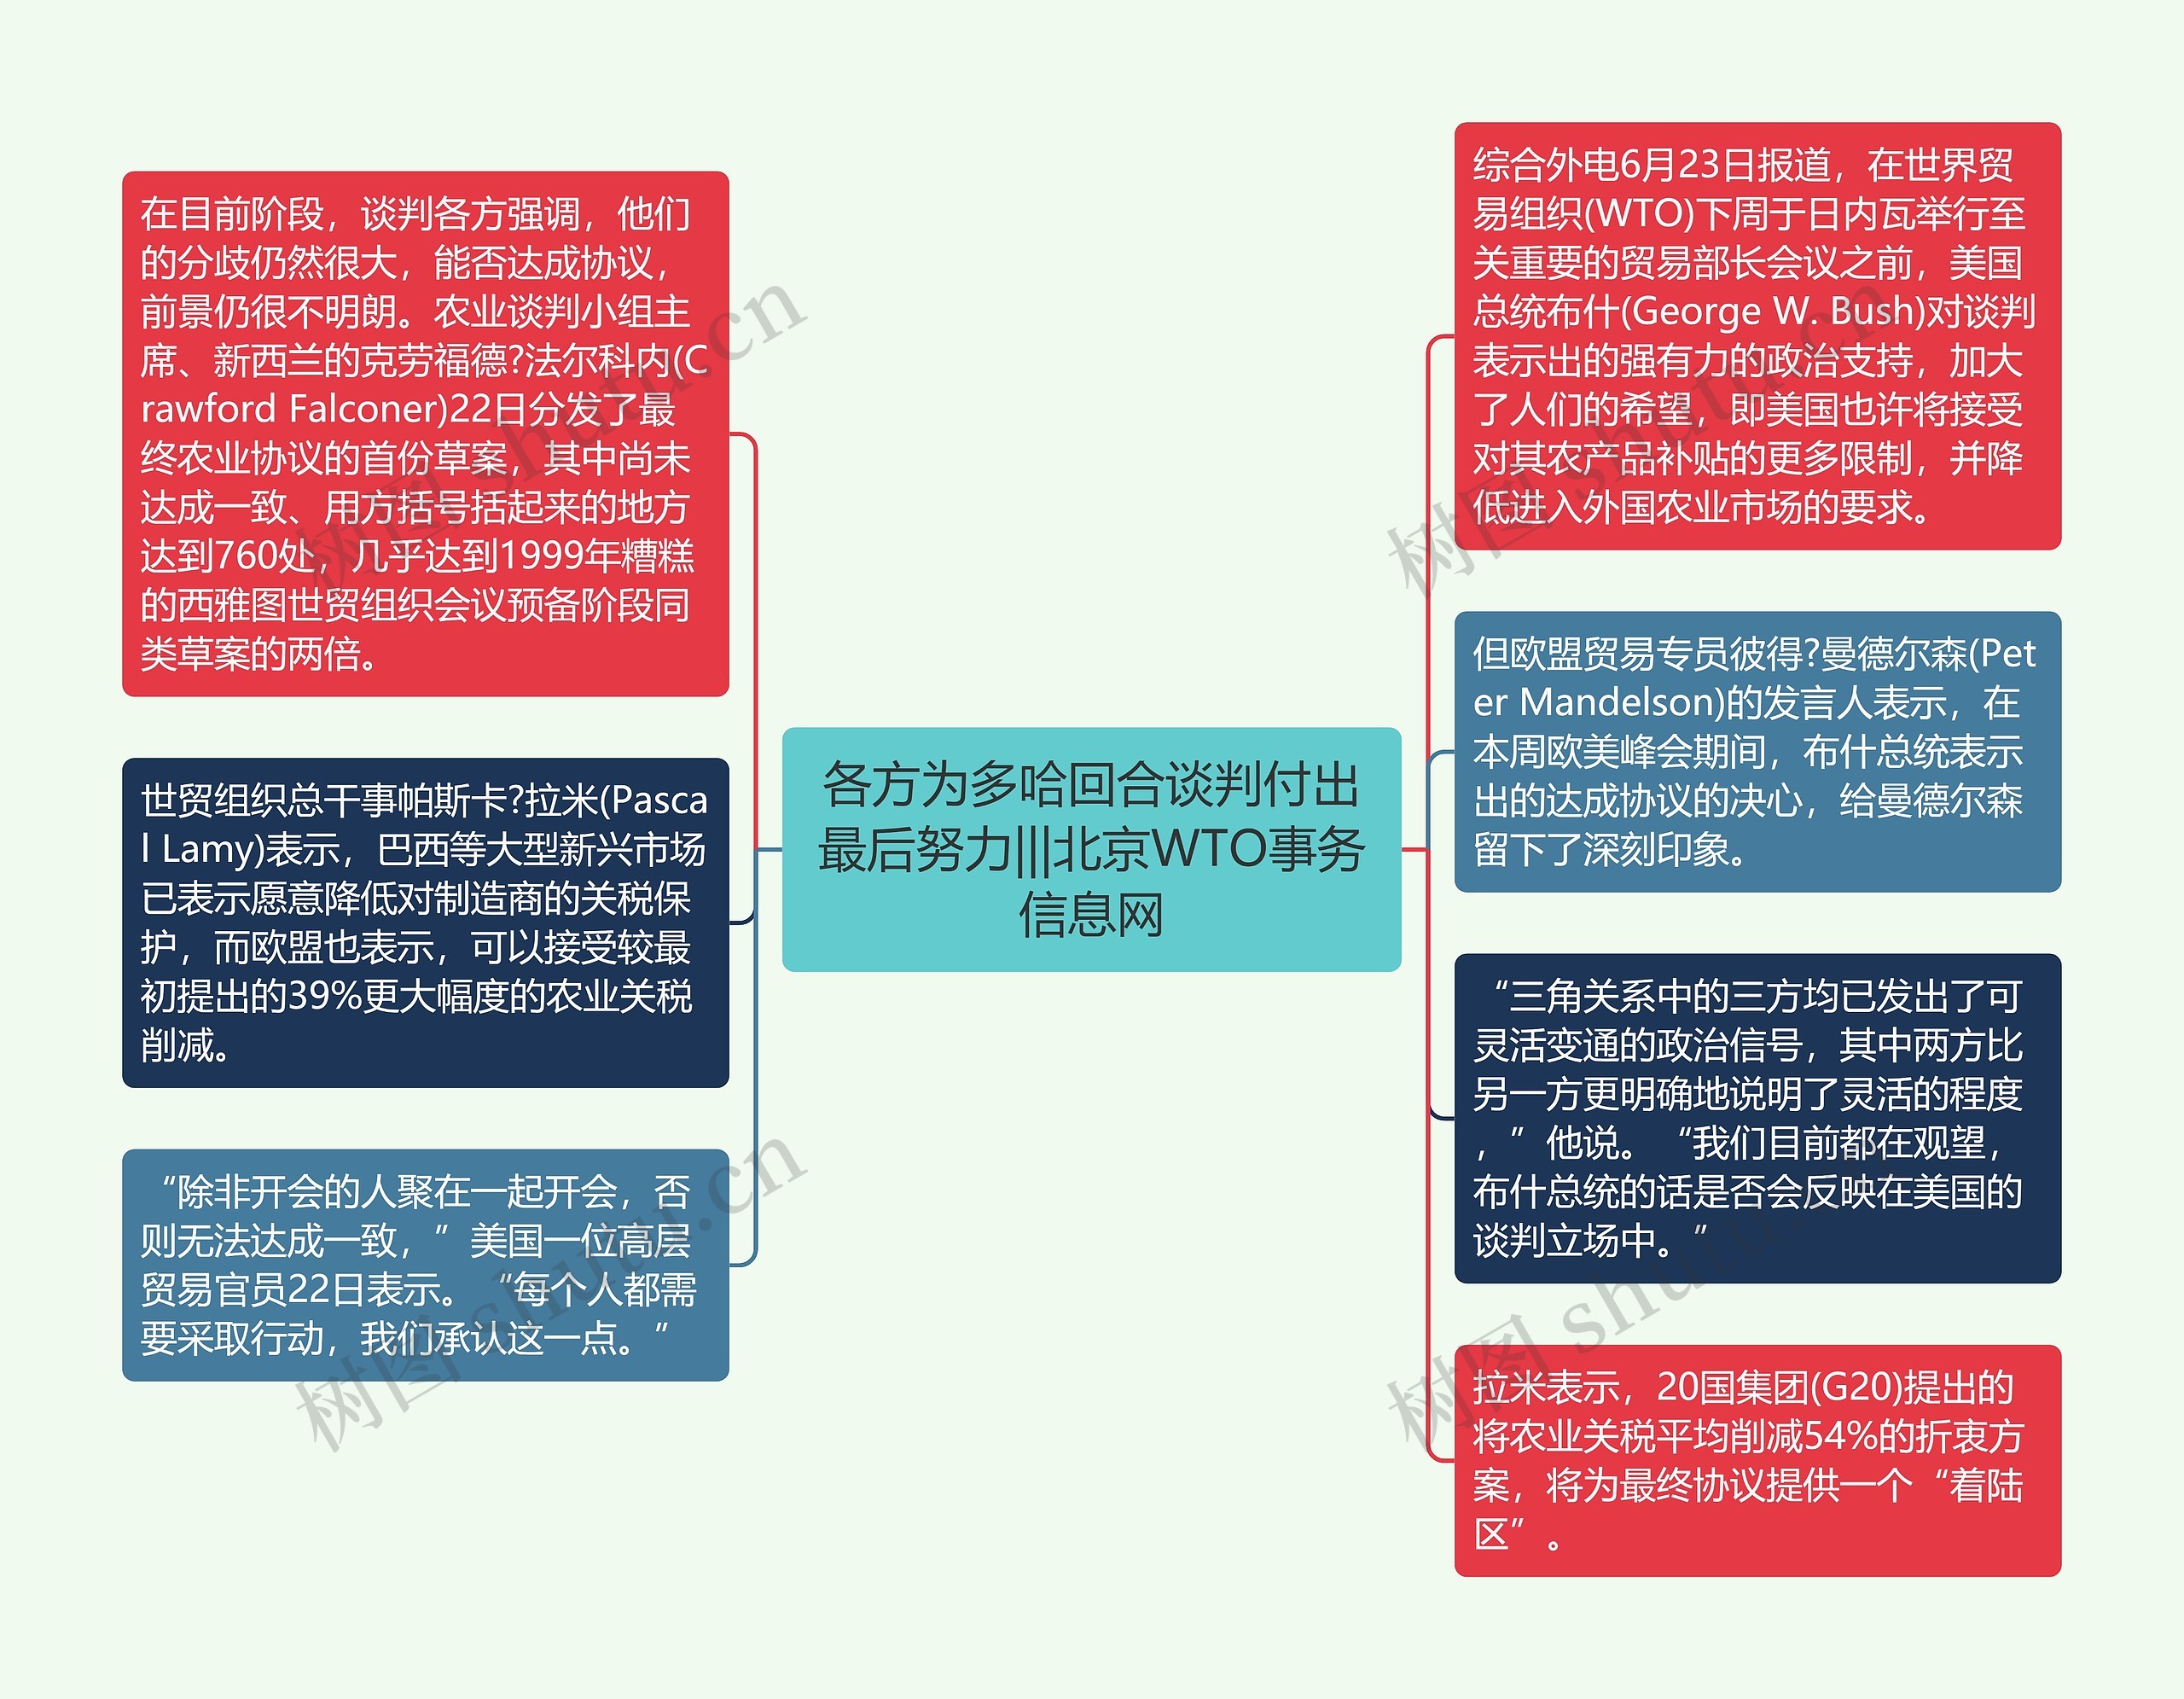 各方为多哈回合谈判付出最后努力|||北京WTO事务信息网思维导图